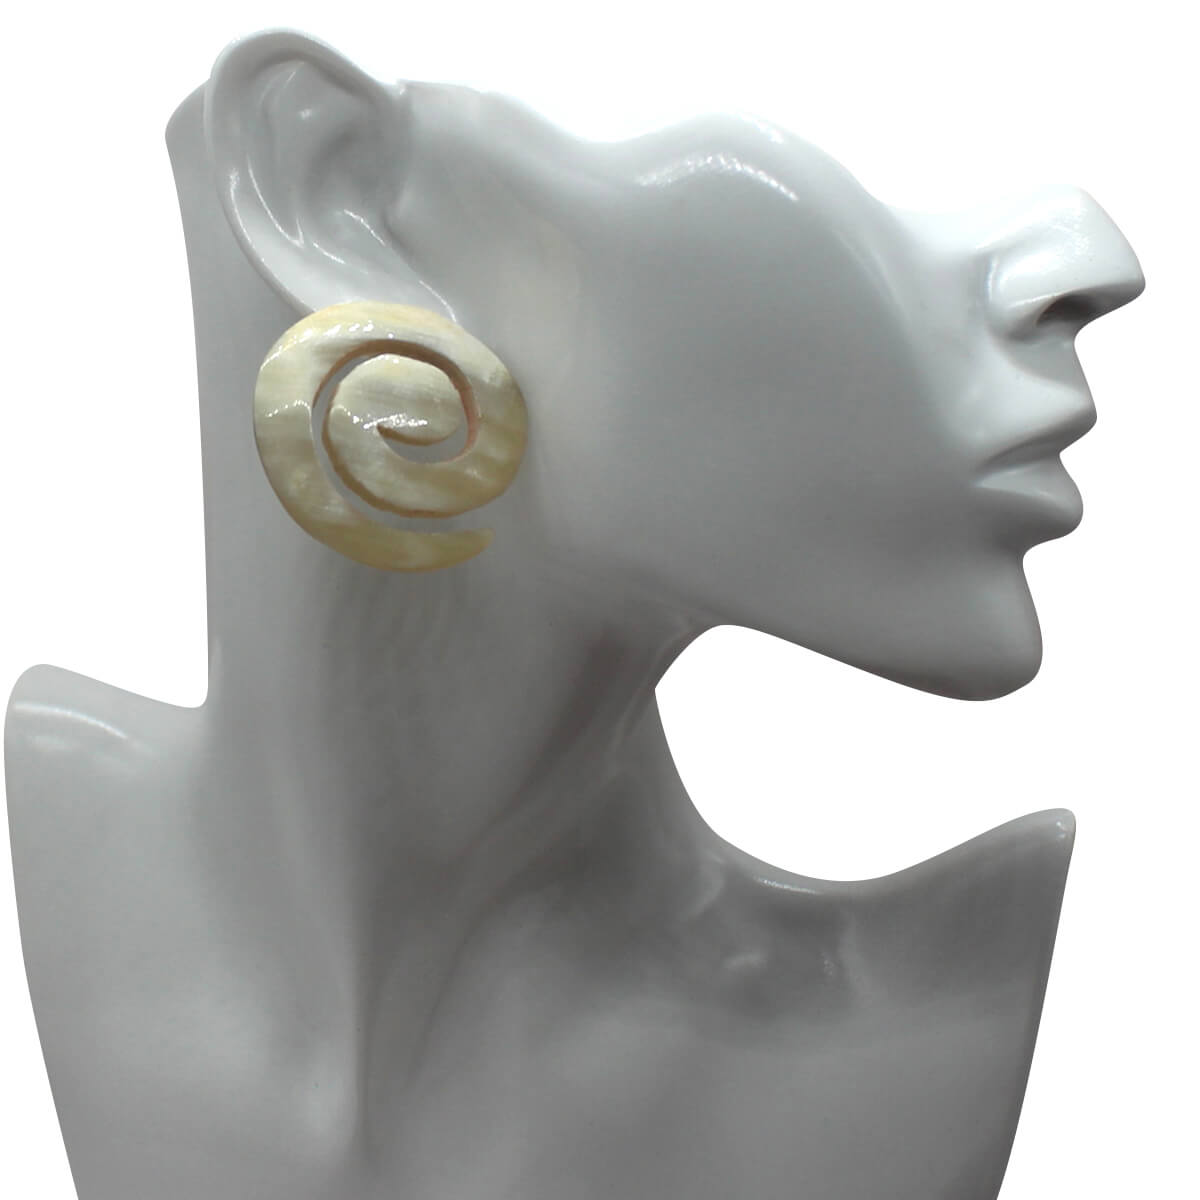 Swirl Horn Earrings